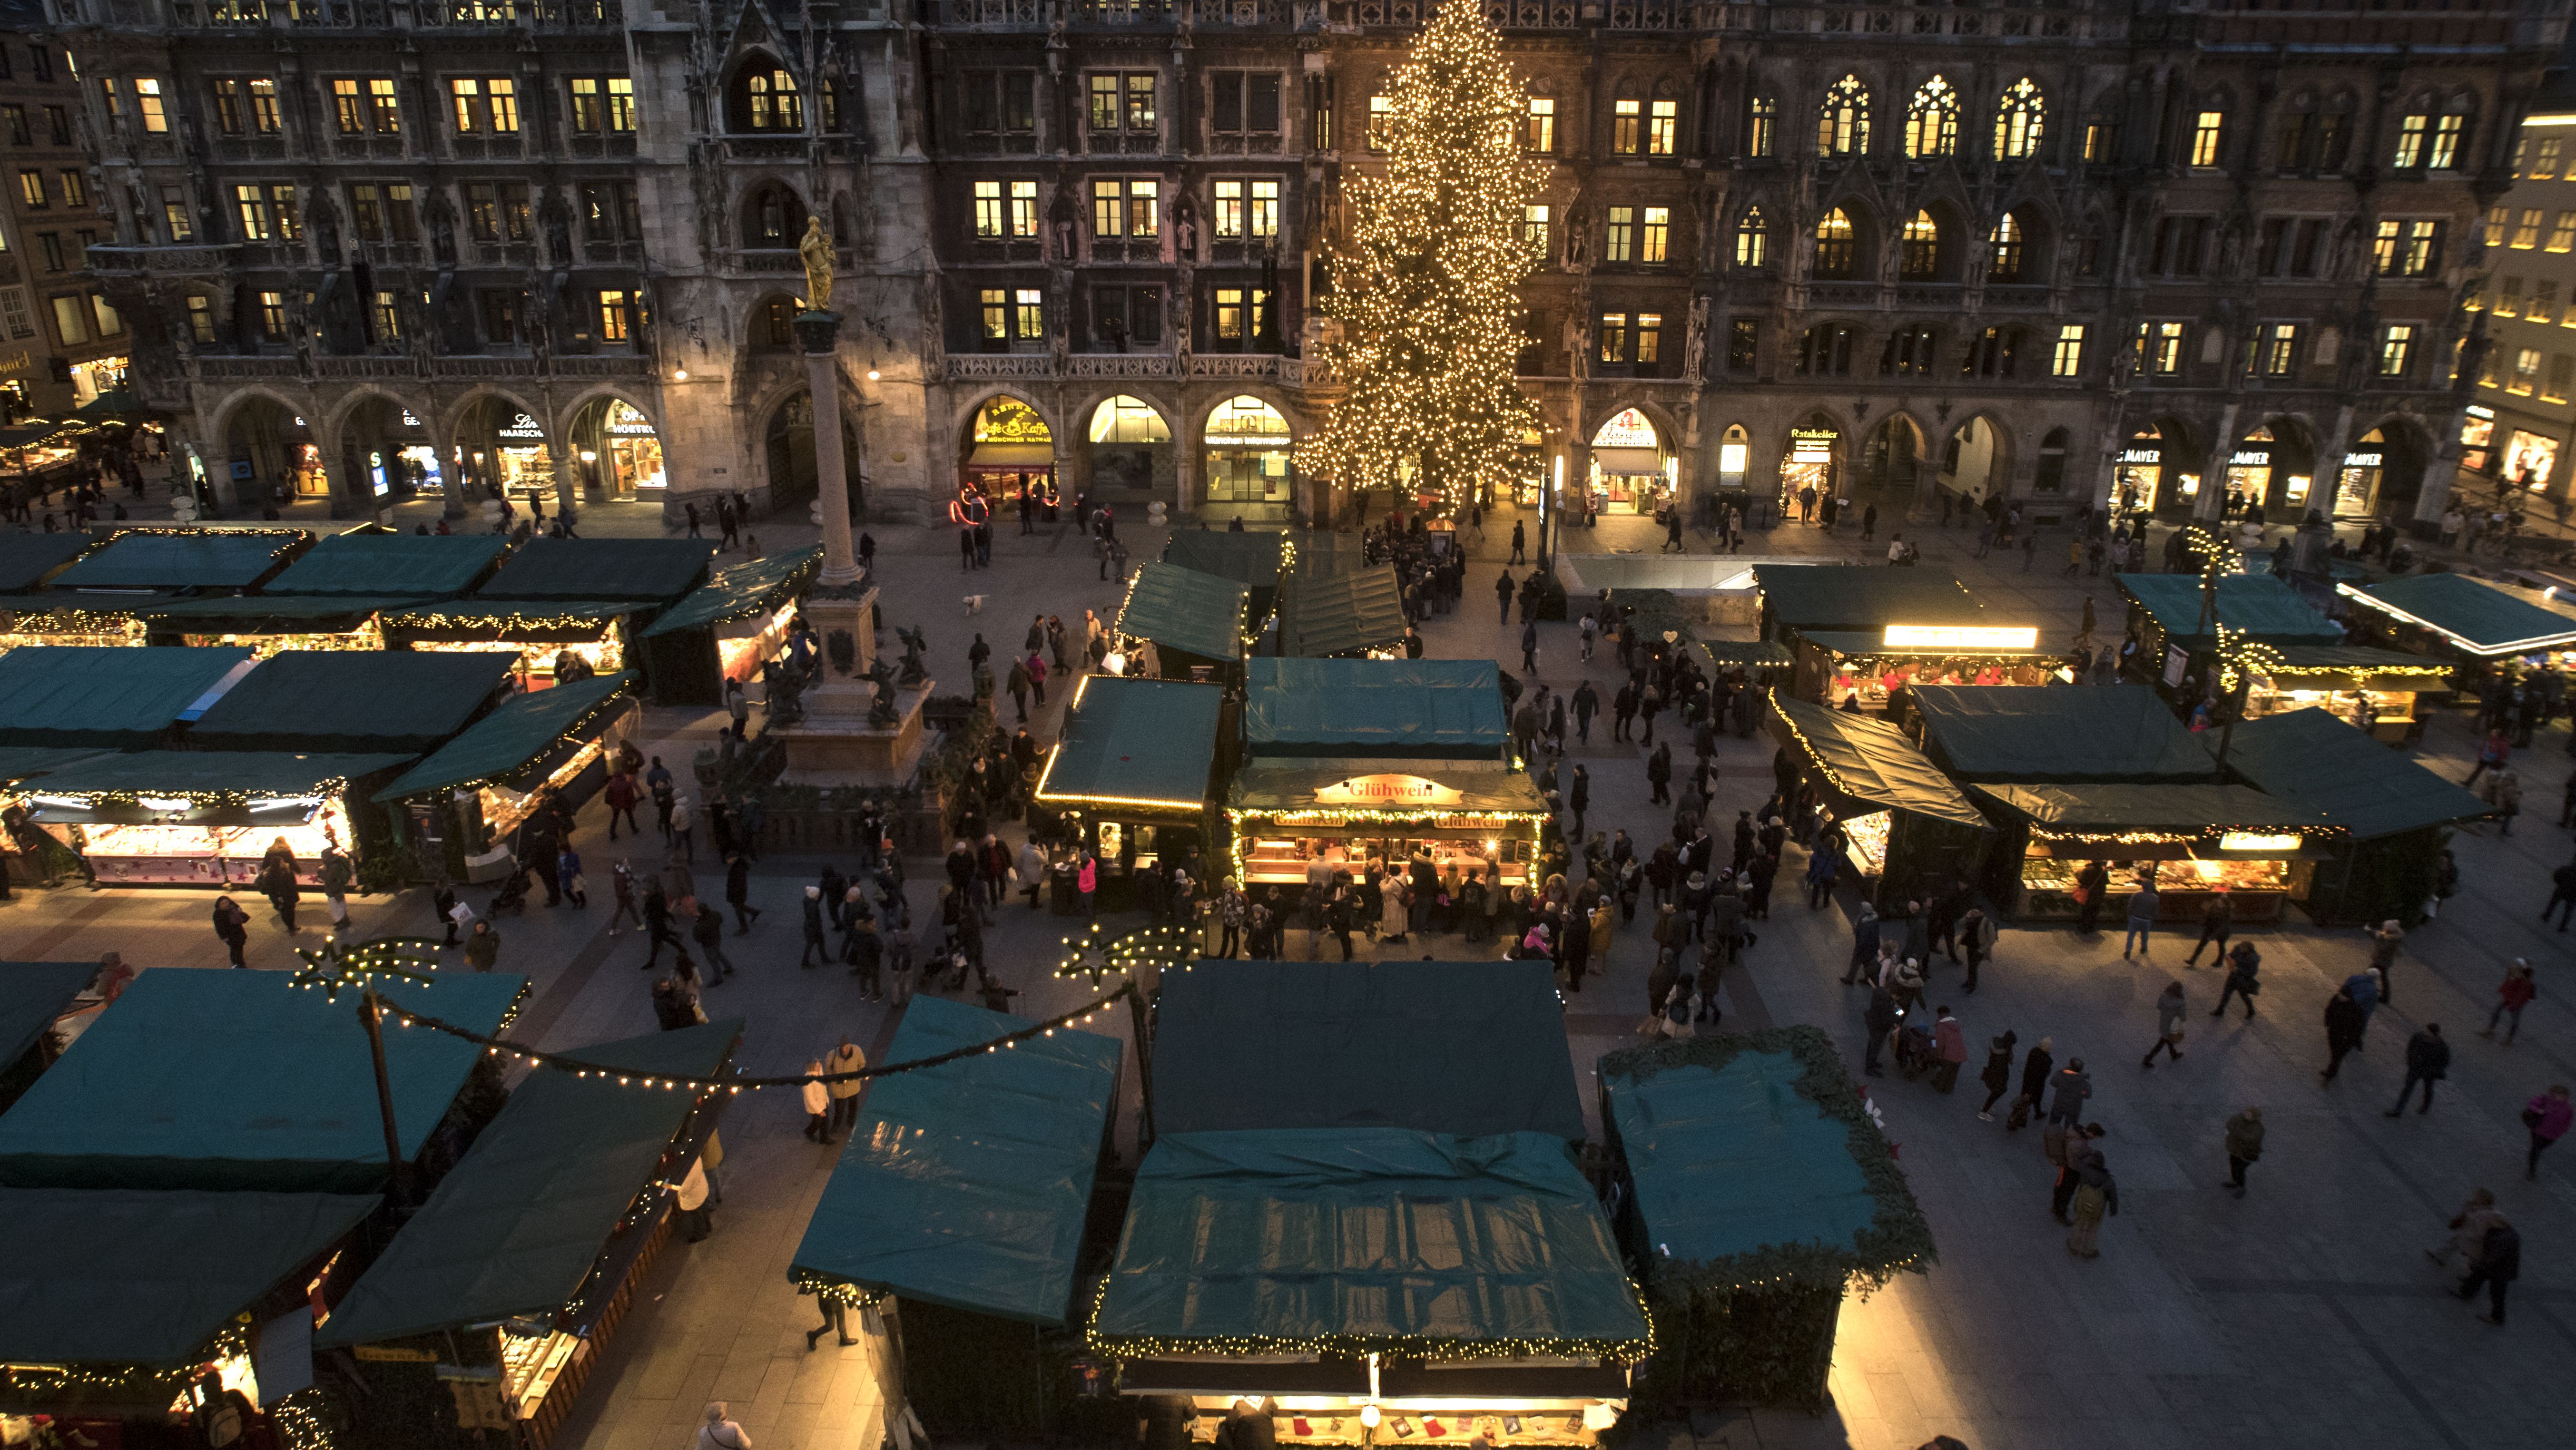 Sanders Scheermes Met name Christmas market scrapped in Munich amid German Covid surge | CNN